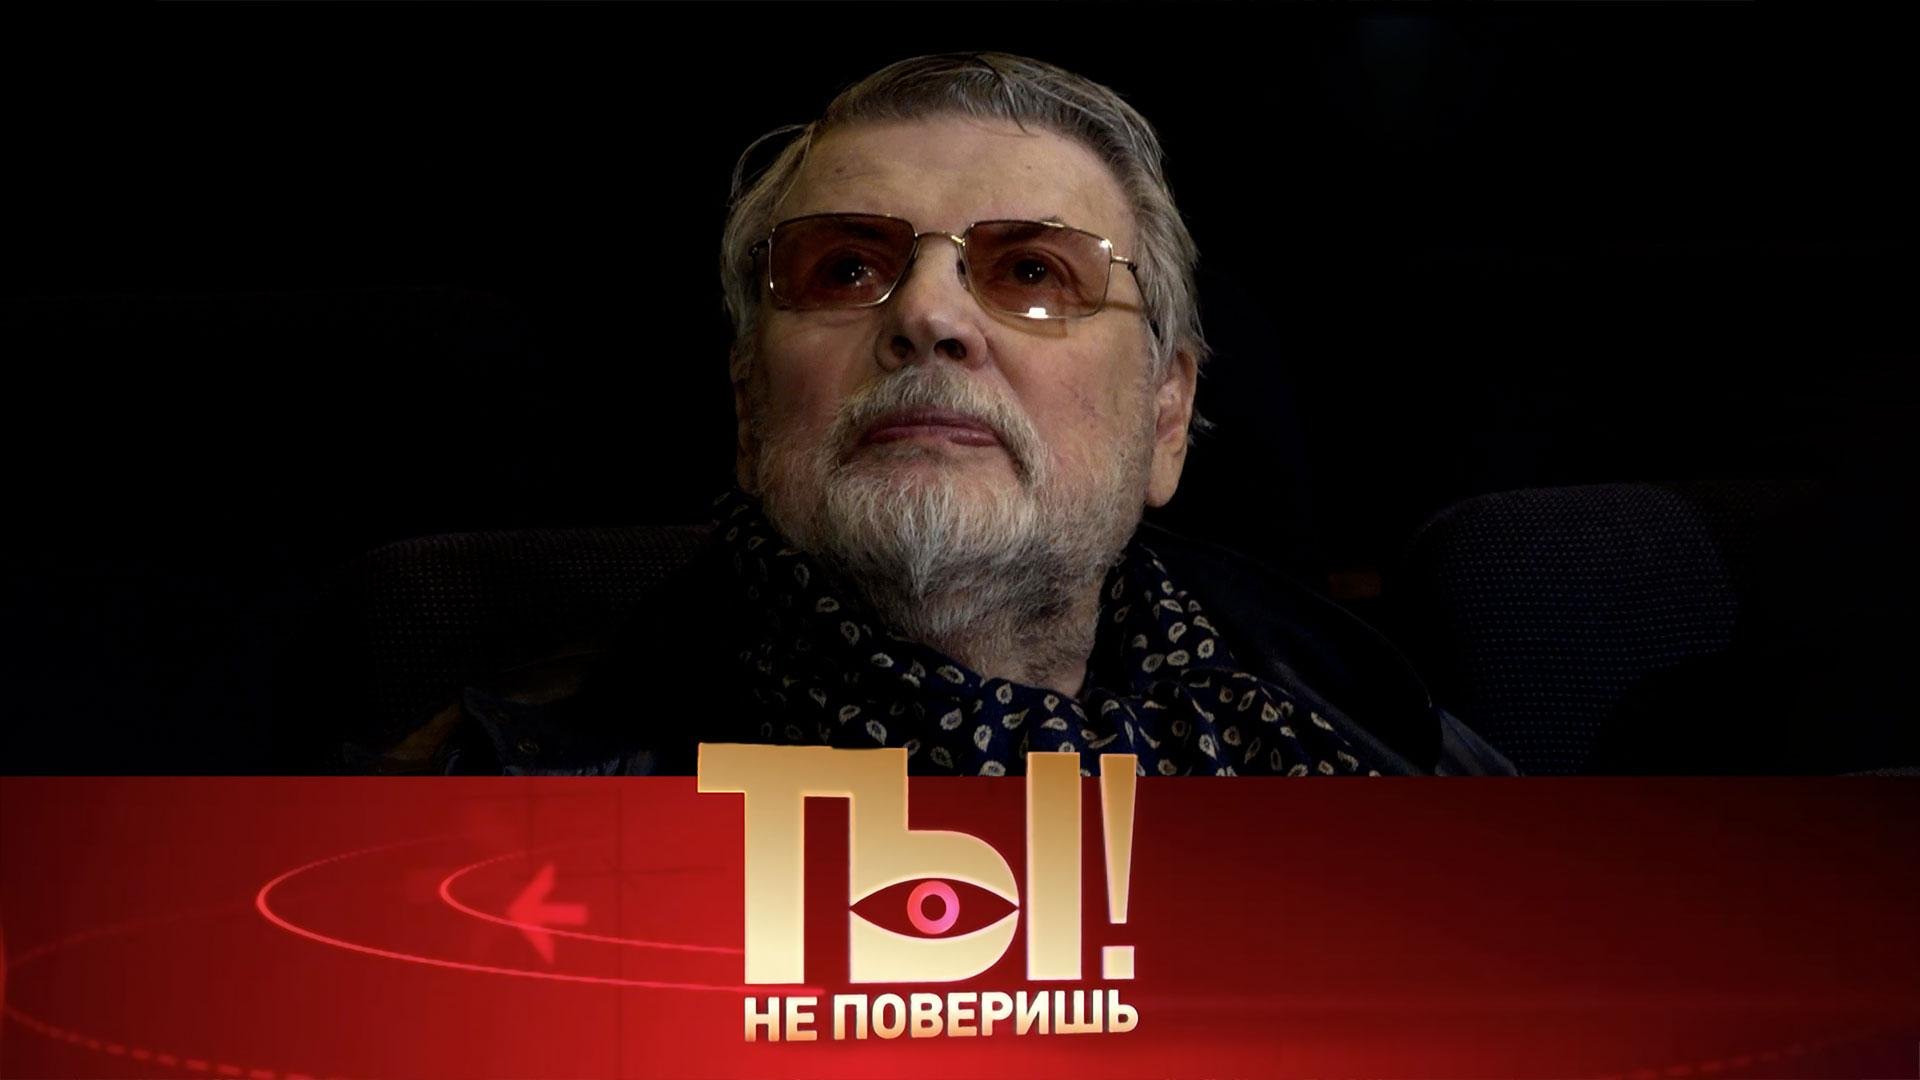 Звезда Ширвиндта, знаменитости на выборах и иск Киркорова против Успенской | Ты не поверишь!